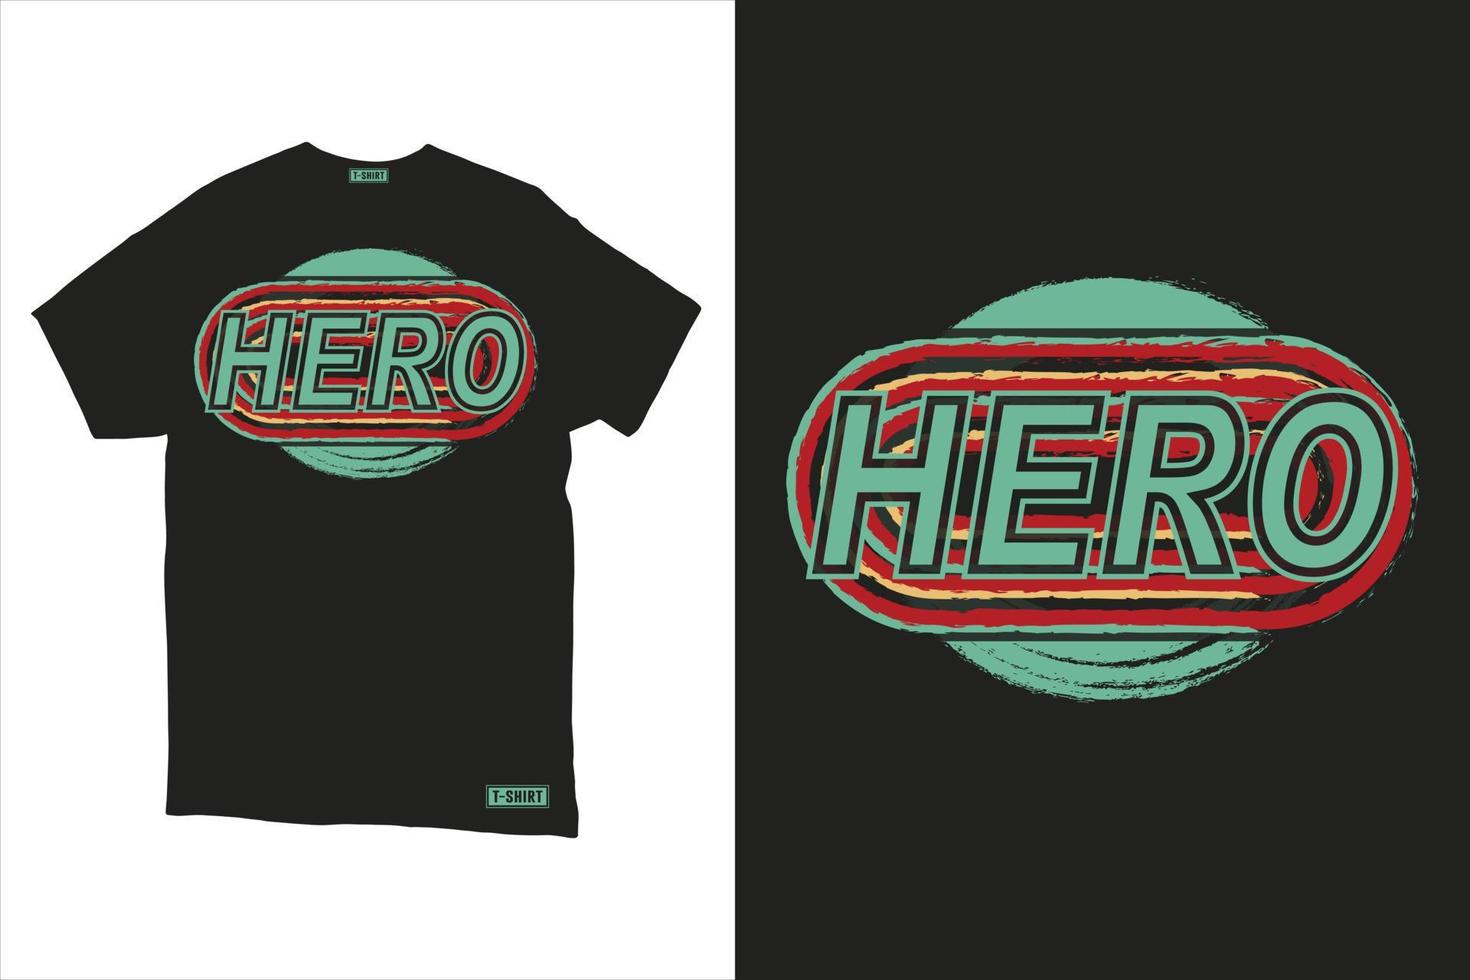 tipografía camiseta diseño modelo con grunge vector